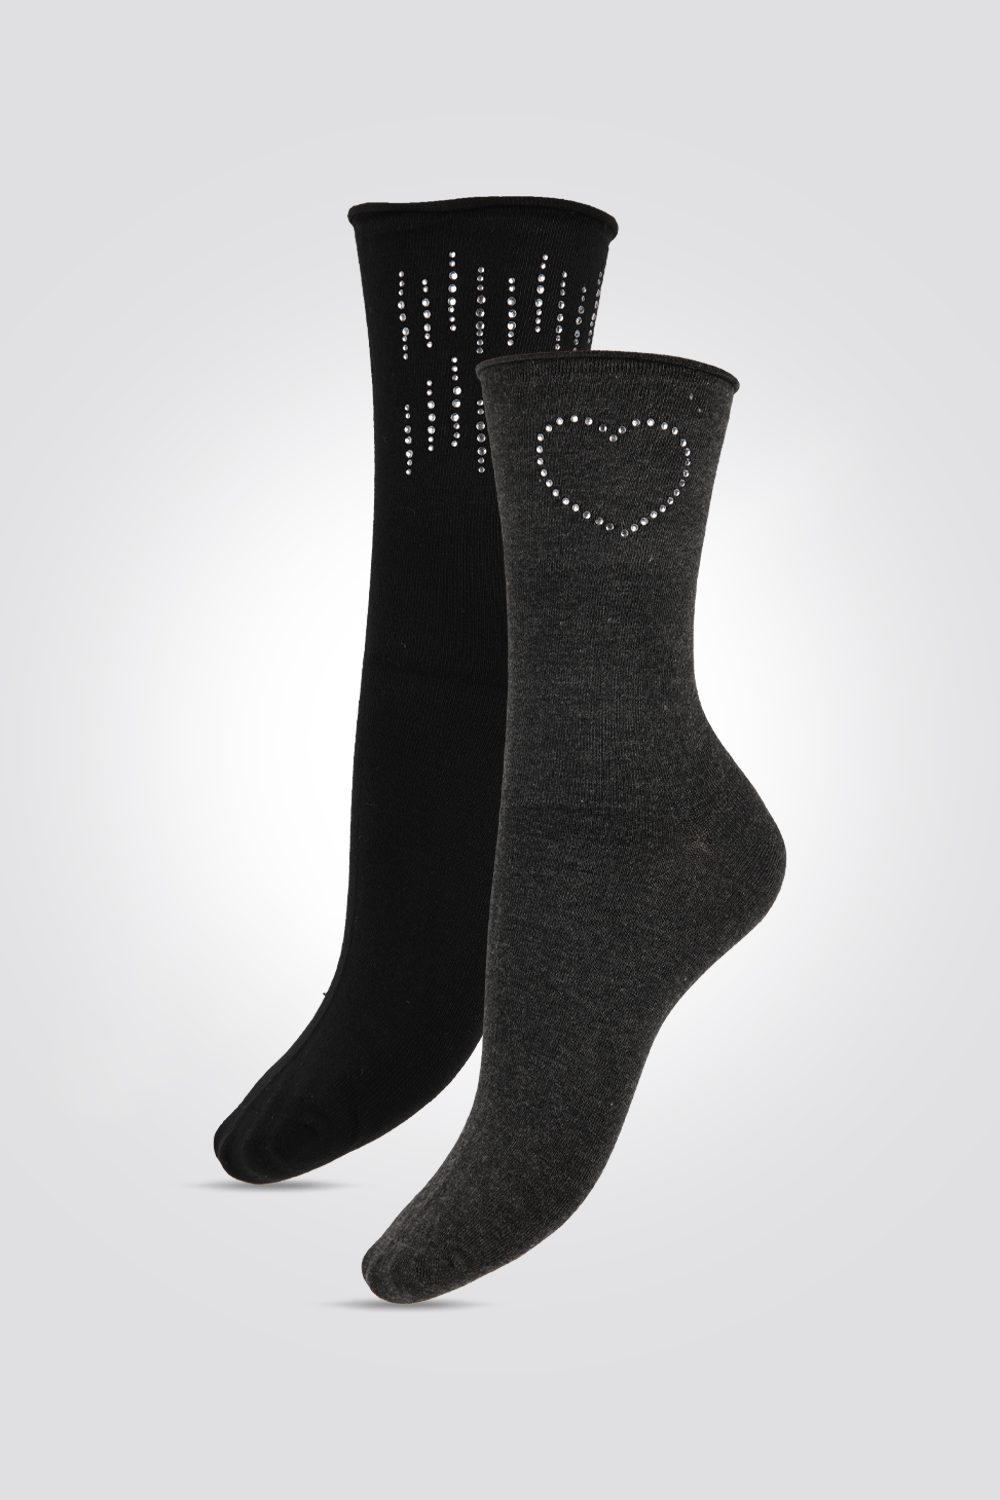 DELTA - מארז 2 זוגות גרביים גבוהות יהלומים שחור ואפור - MASHBIR//365